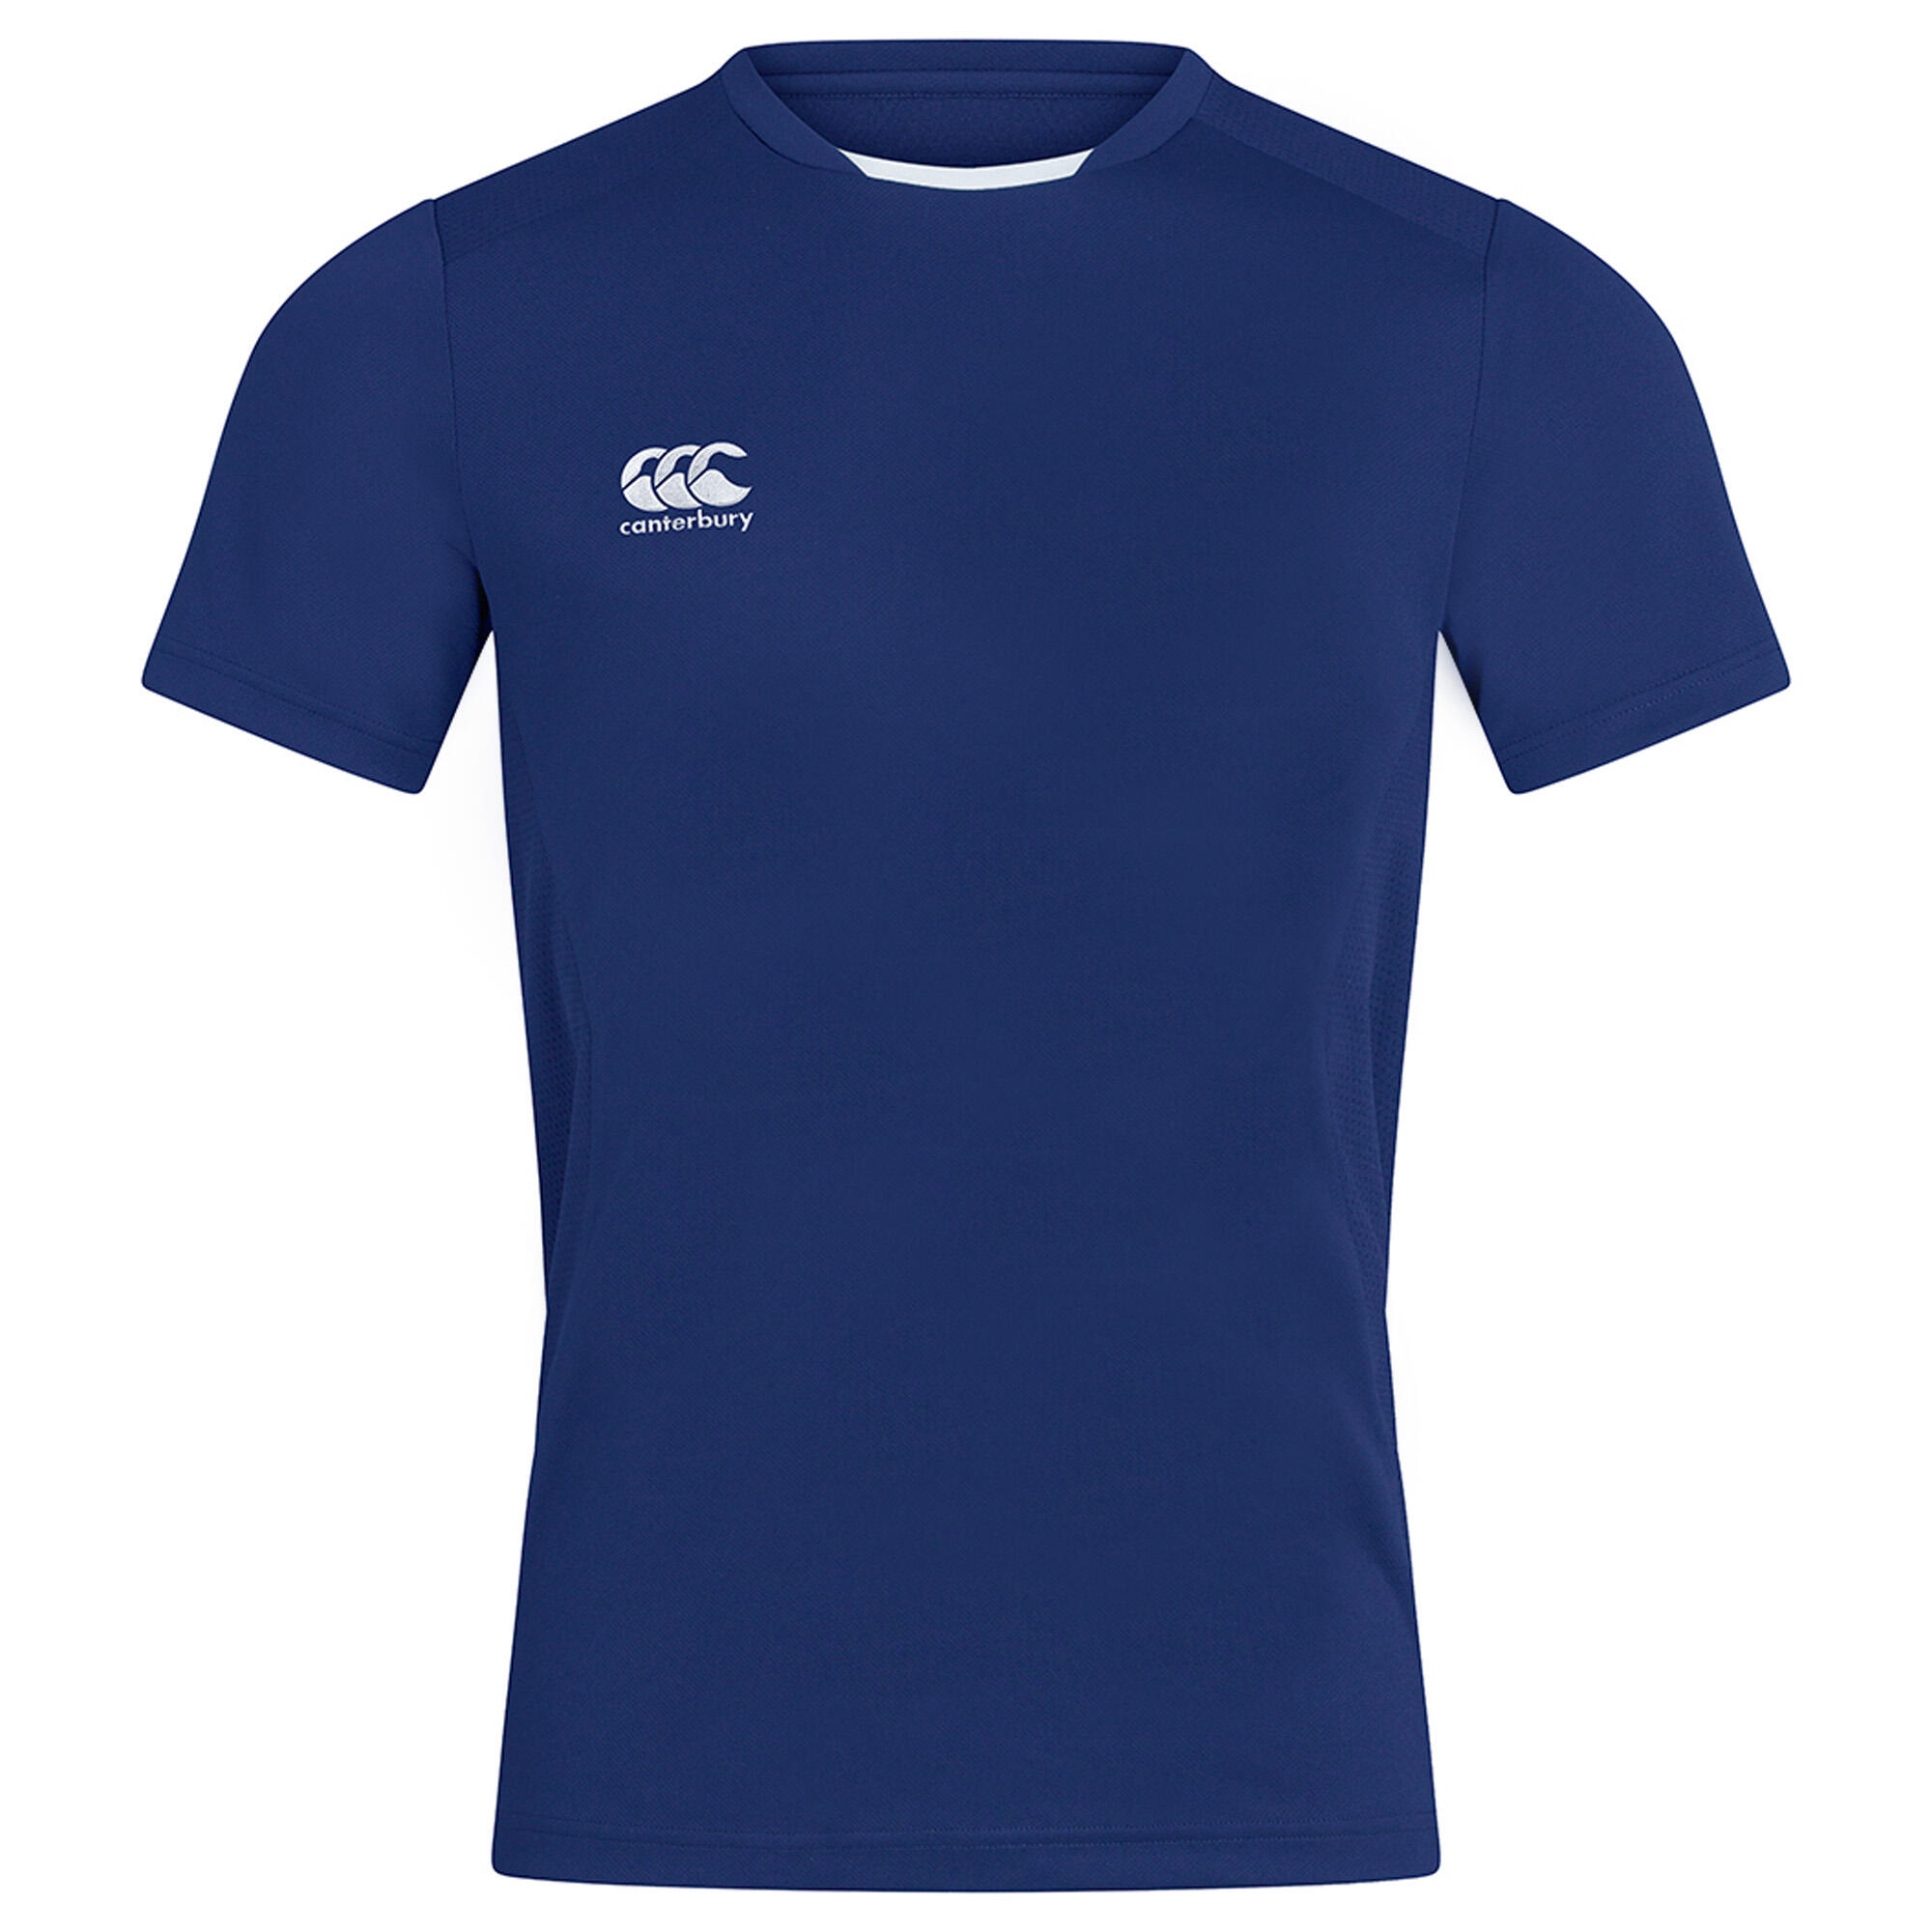 CANTERBURY Unisex Adult Club Dry TShirt (Royal Blue)